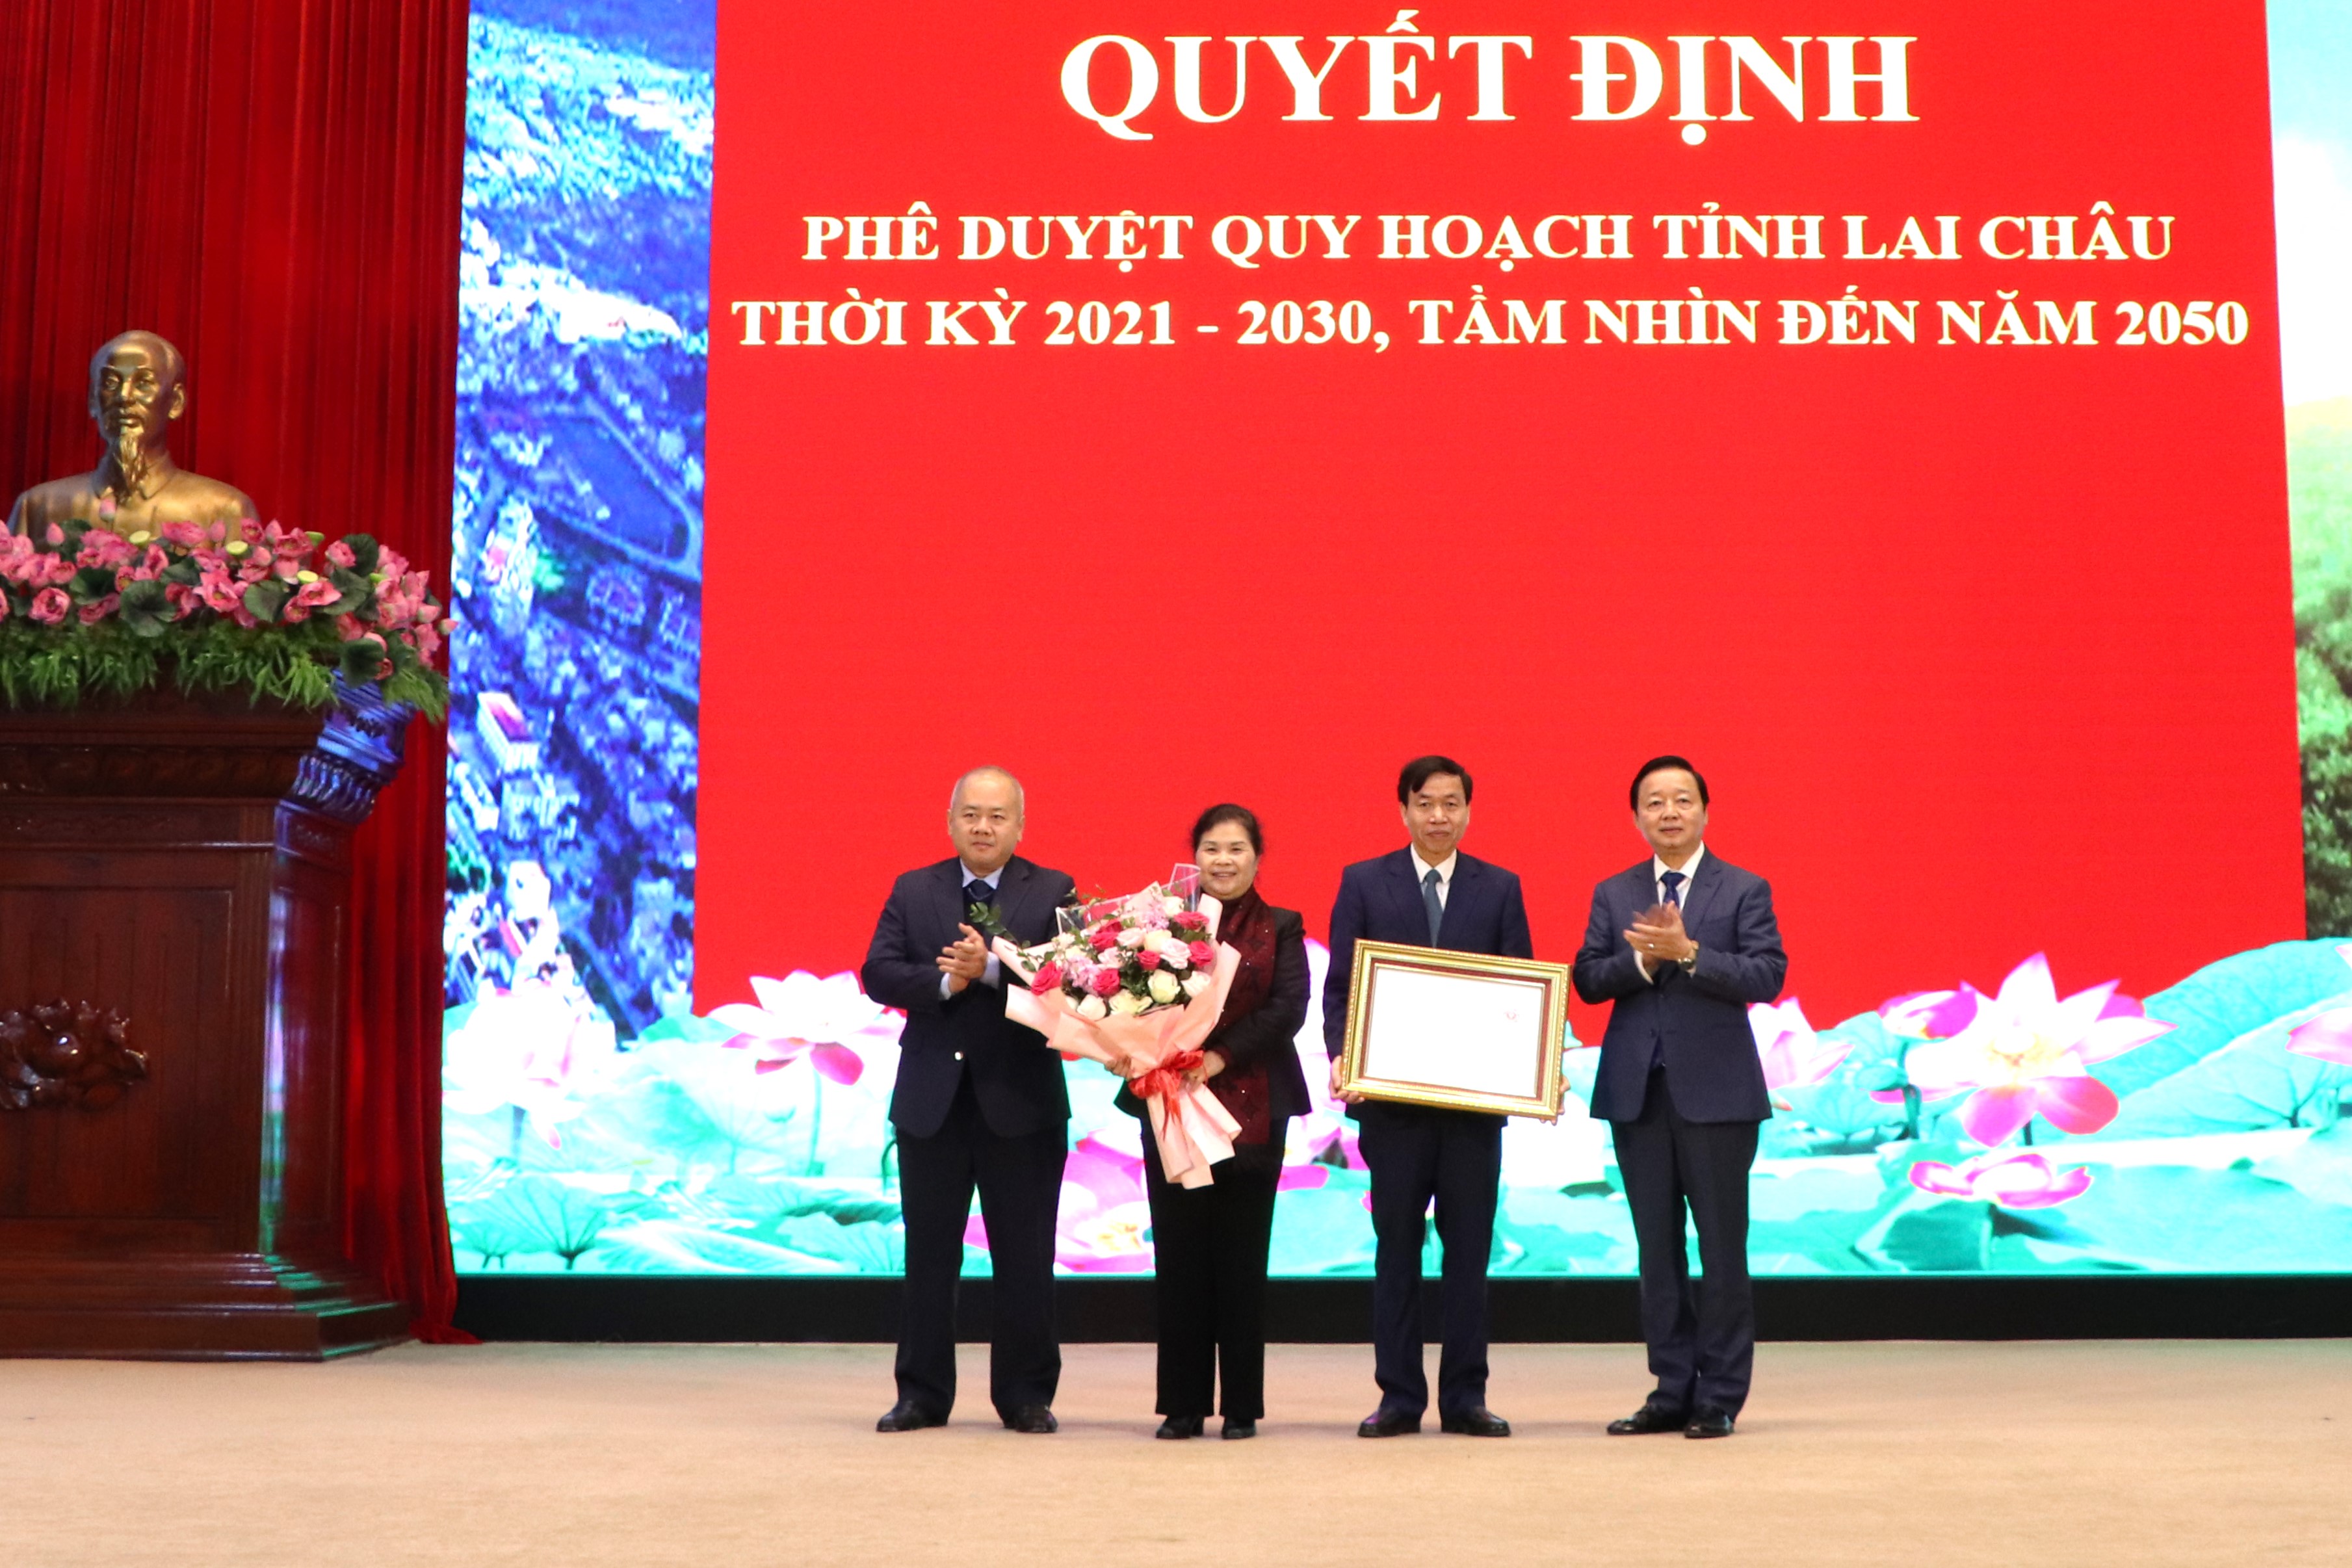 Phó Thủ tướng Chính phủ Trần Hồng Hà trao Quyết định Phê duyệt Quy hoạch tỉnh Lai Châu thời kỳ 2021 - 2030, tầm nhìn đến năm 2050 cho lãnh đạo tỉnh Lai Châu